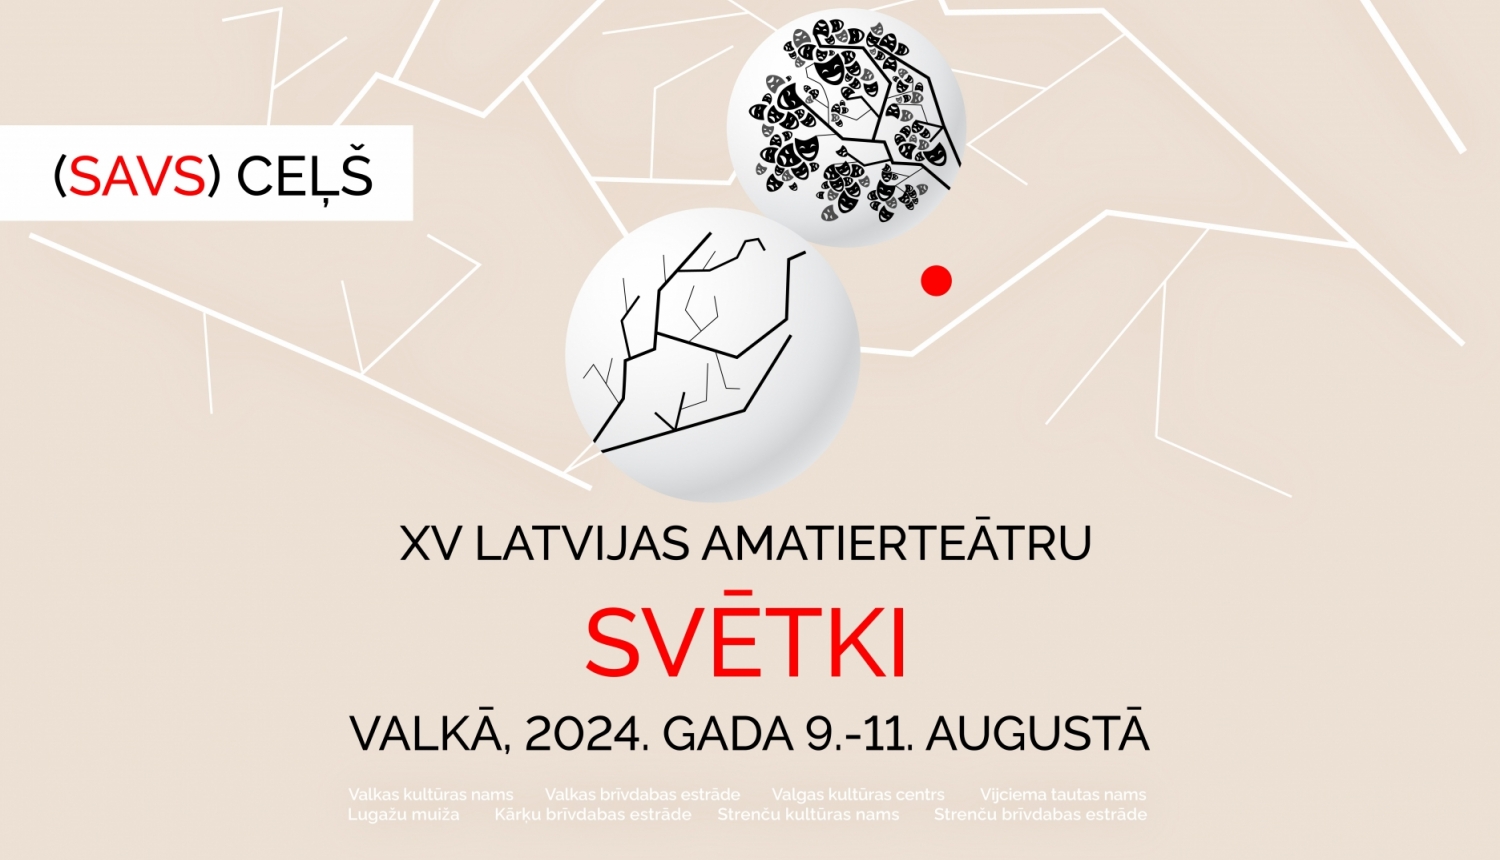 XV Latvijas amatierteātru svētki